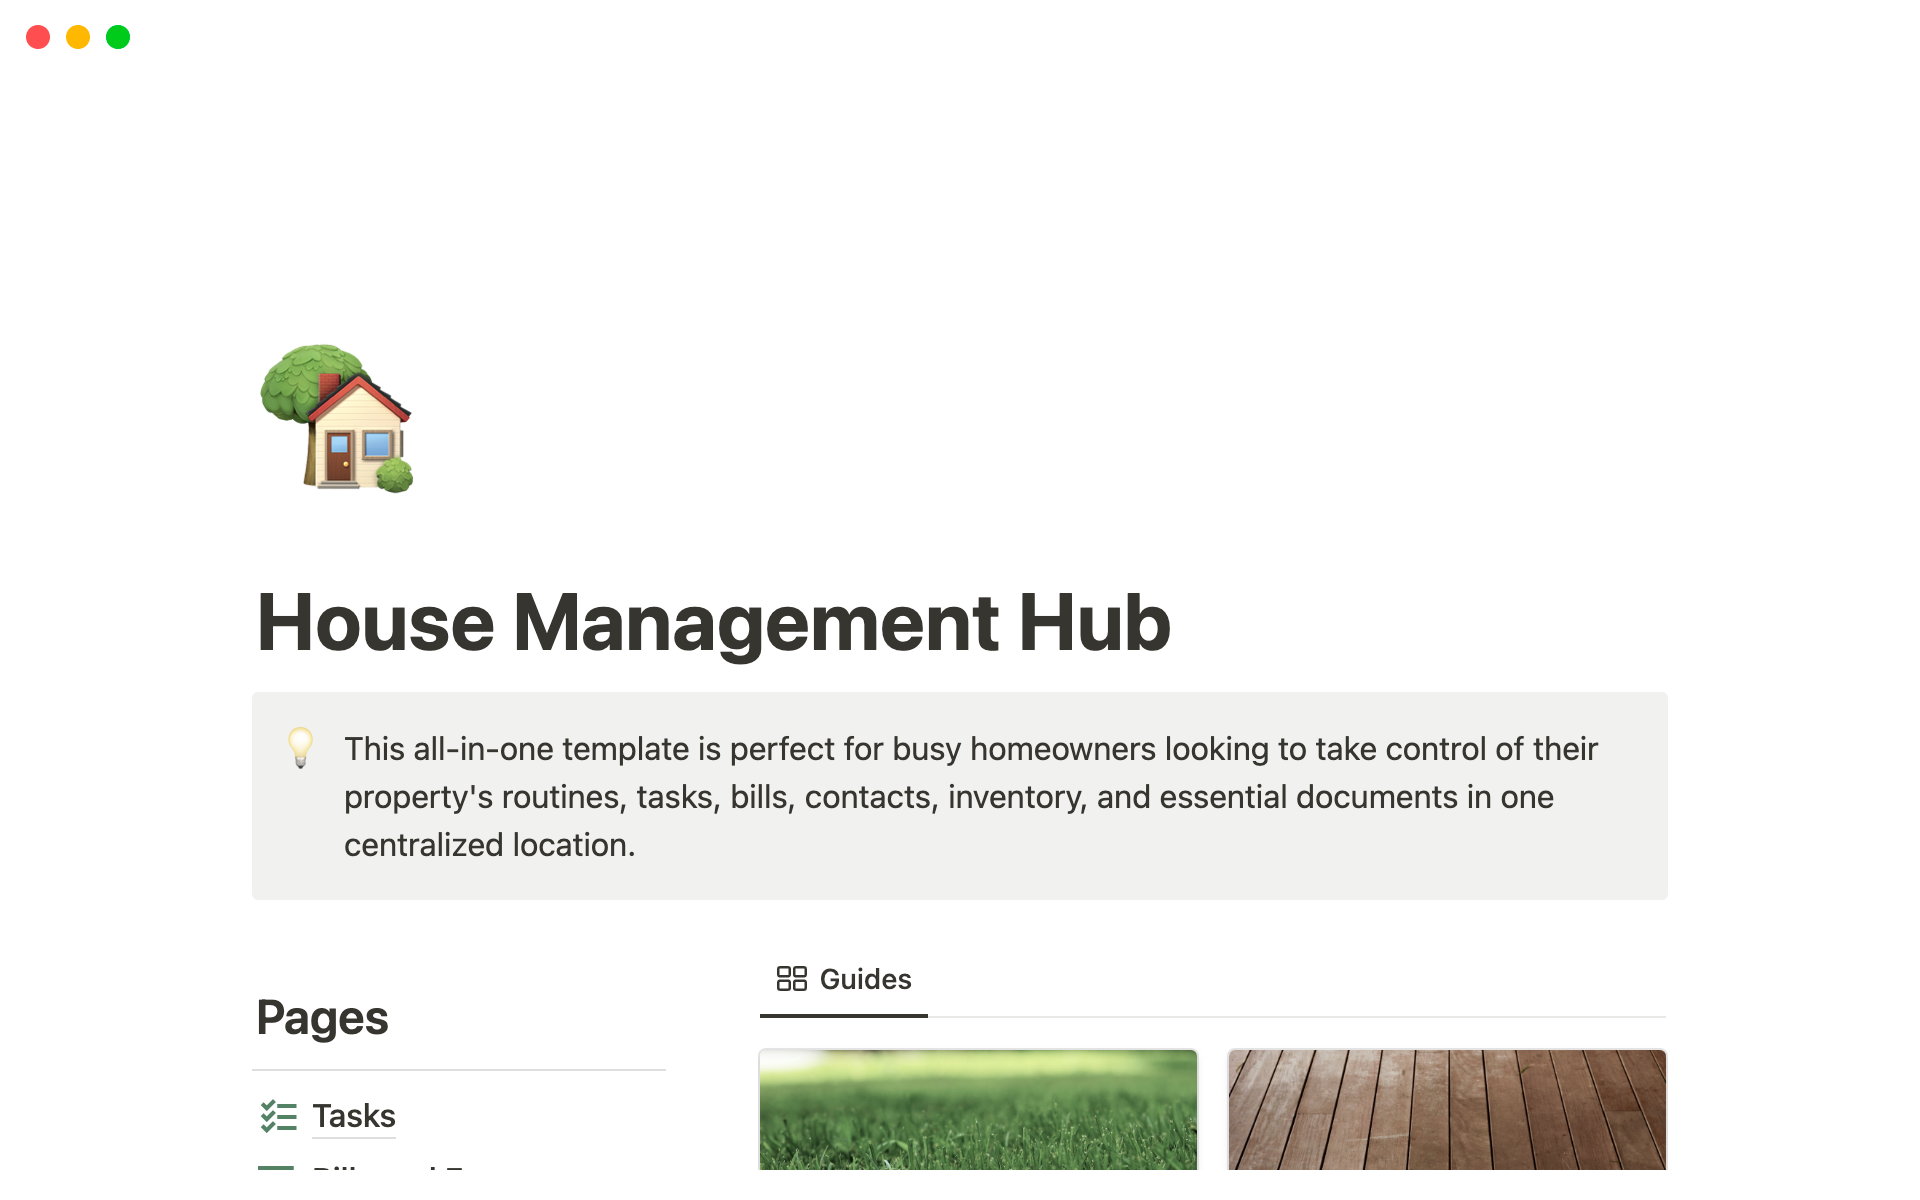 Uma prévia do modelo para House Management Hub